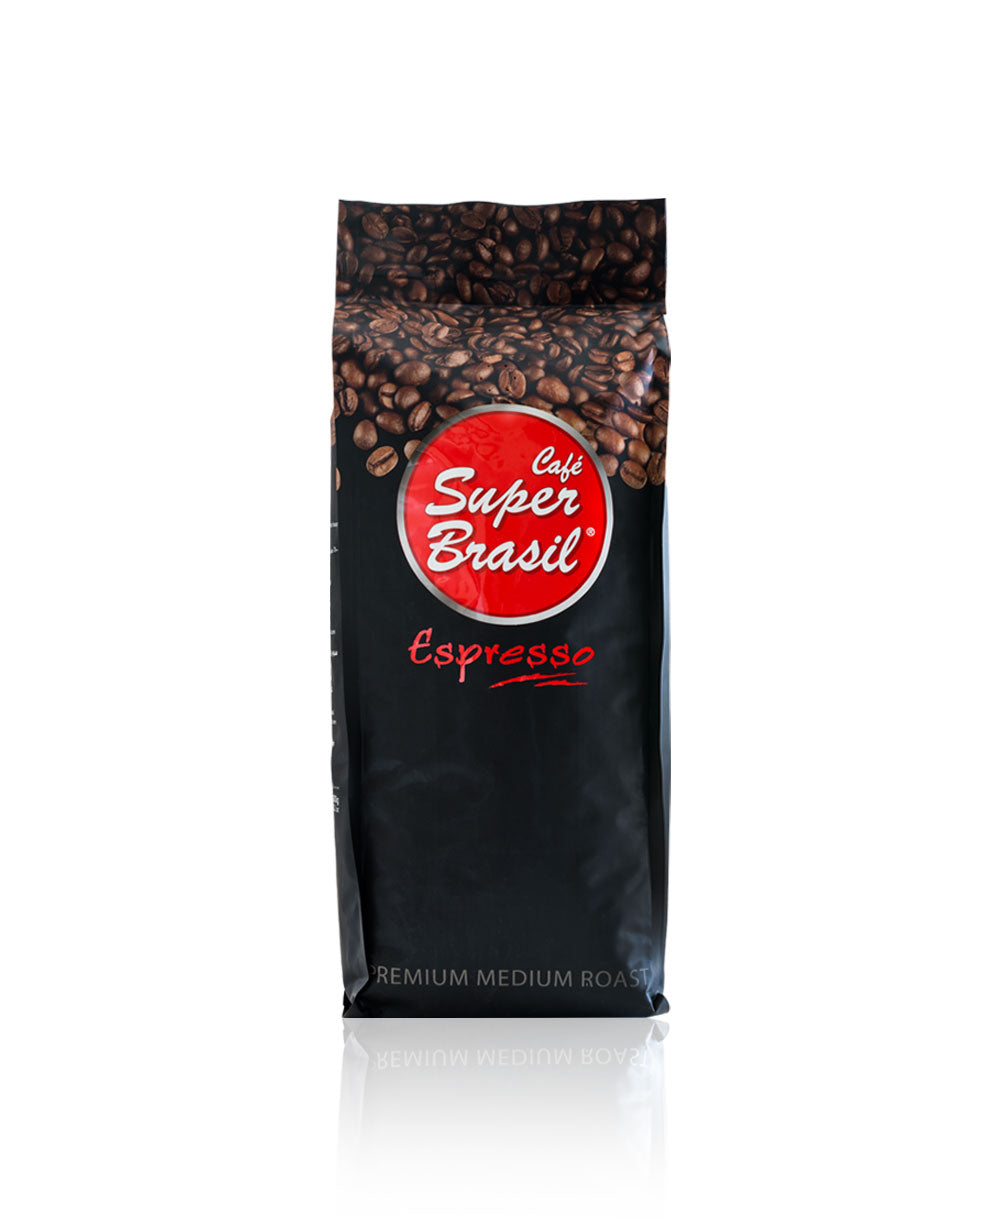 Café Super Brasil Espresso Premium Medium Roasted Beans